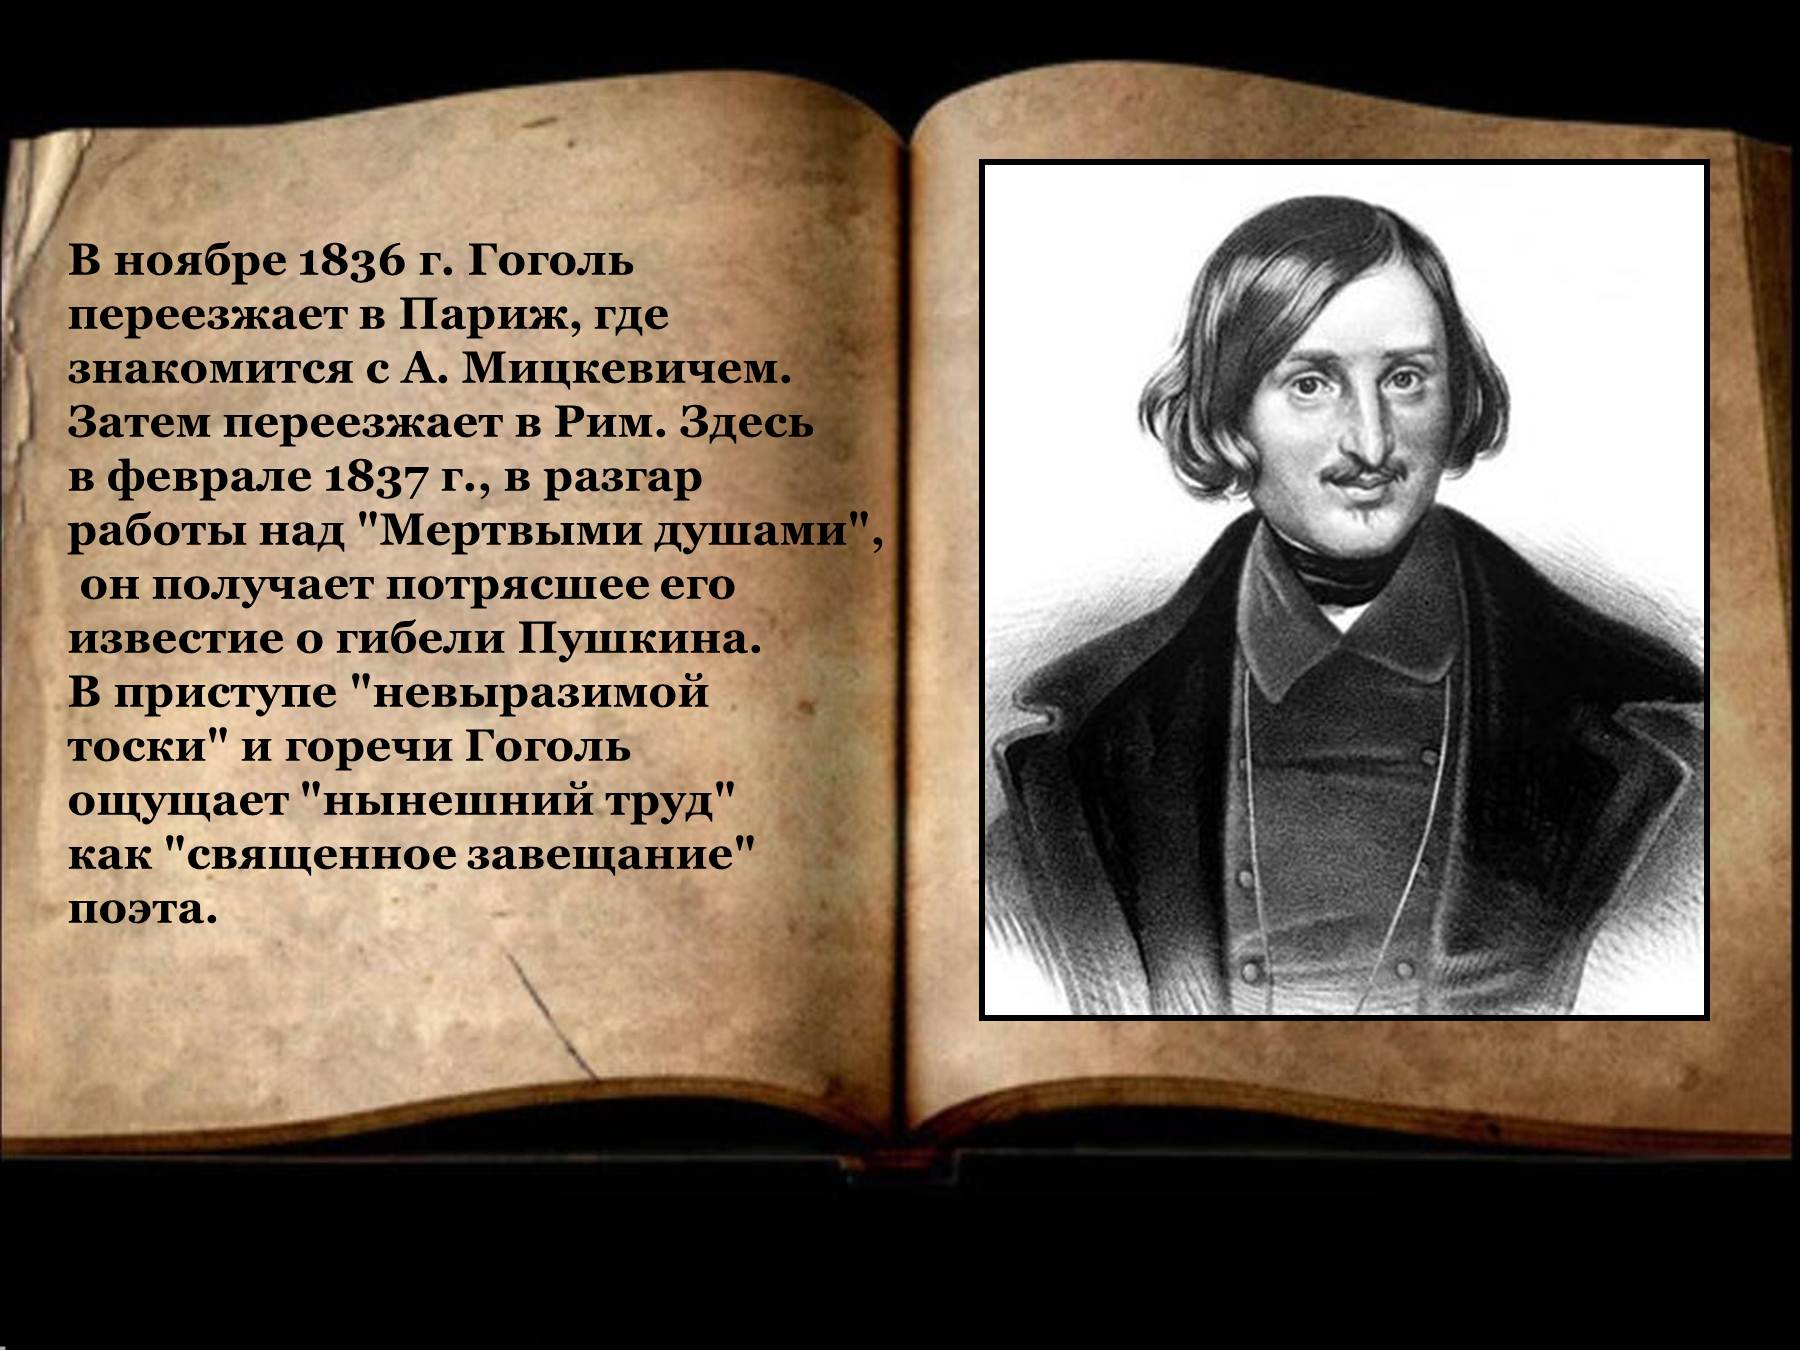 Начало работы над мертвыми душами. Гоголь 1836. Презентация на тему Гоголь. Слайды н в Гоголь.